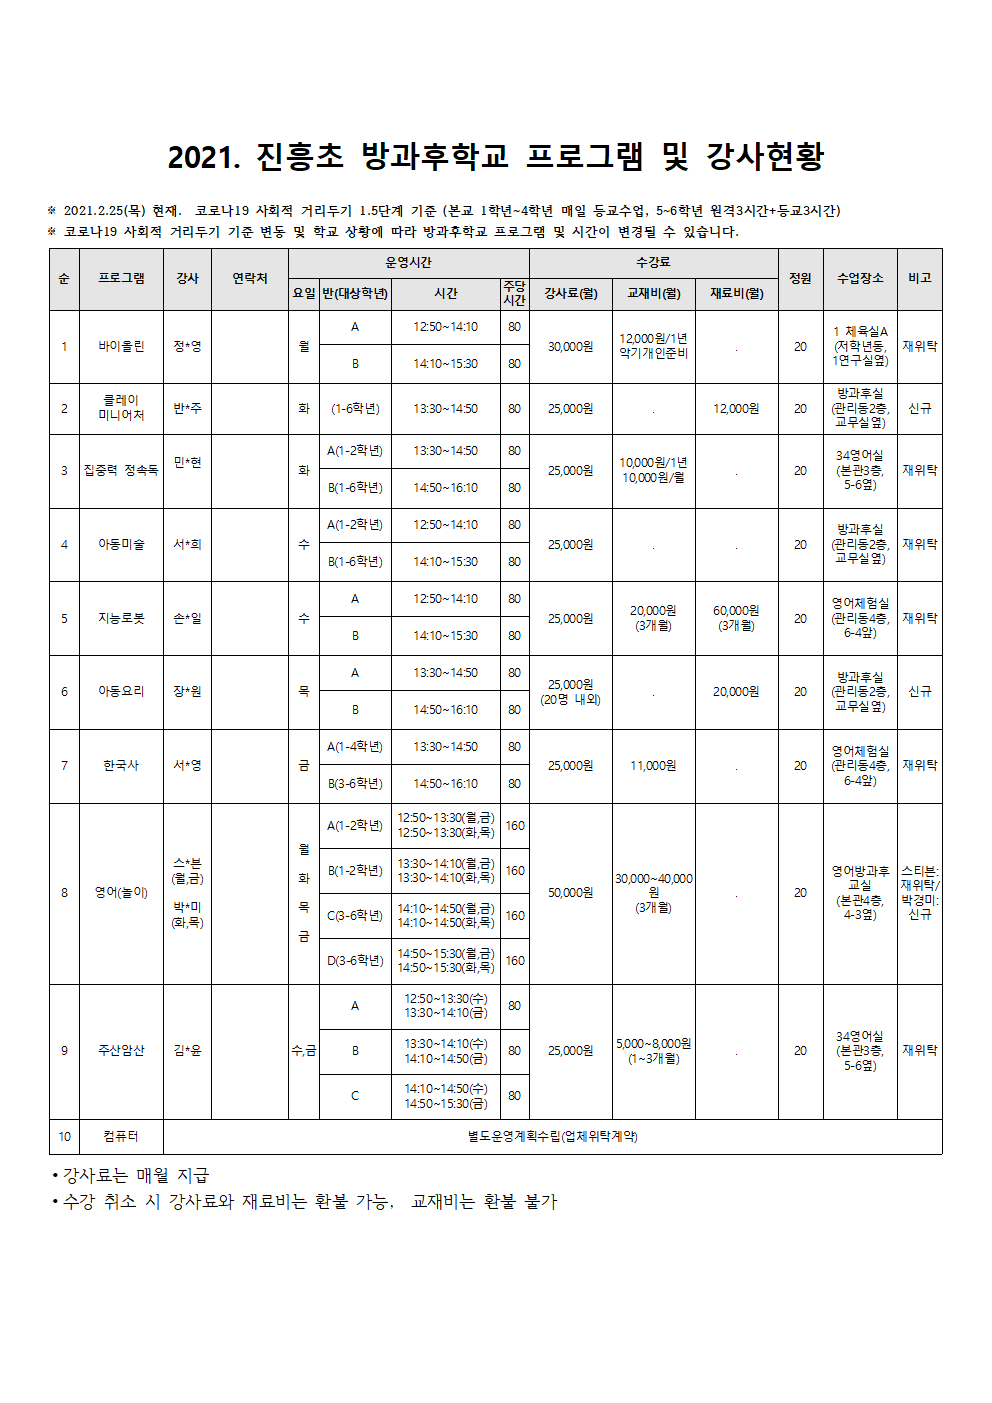 21.03.06  방과후학교 교실 및 시간표, 강사현황(최종)002